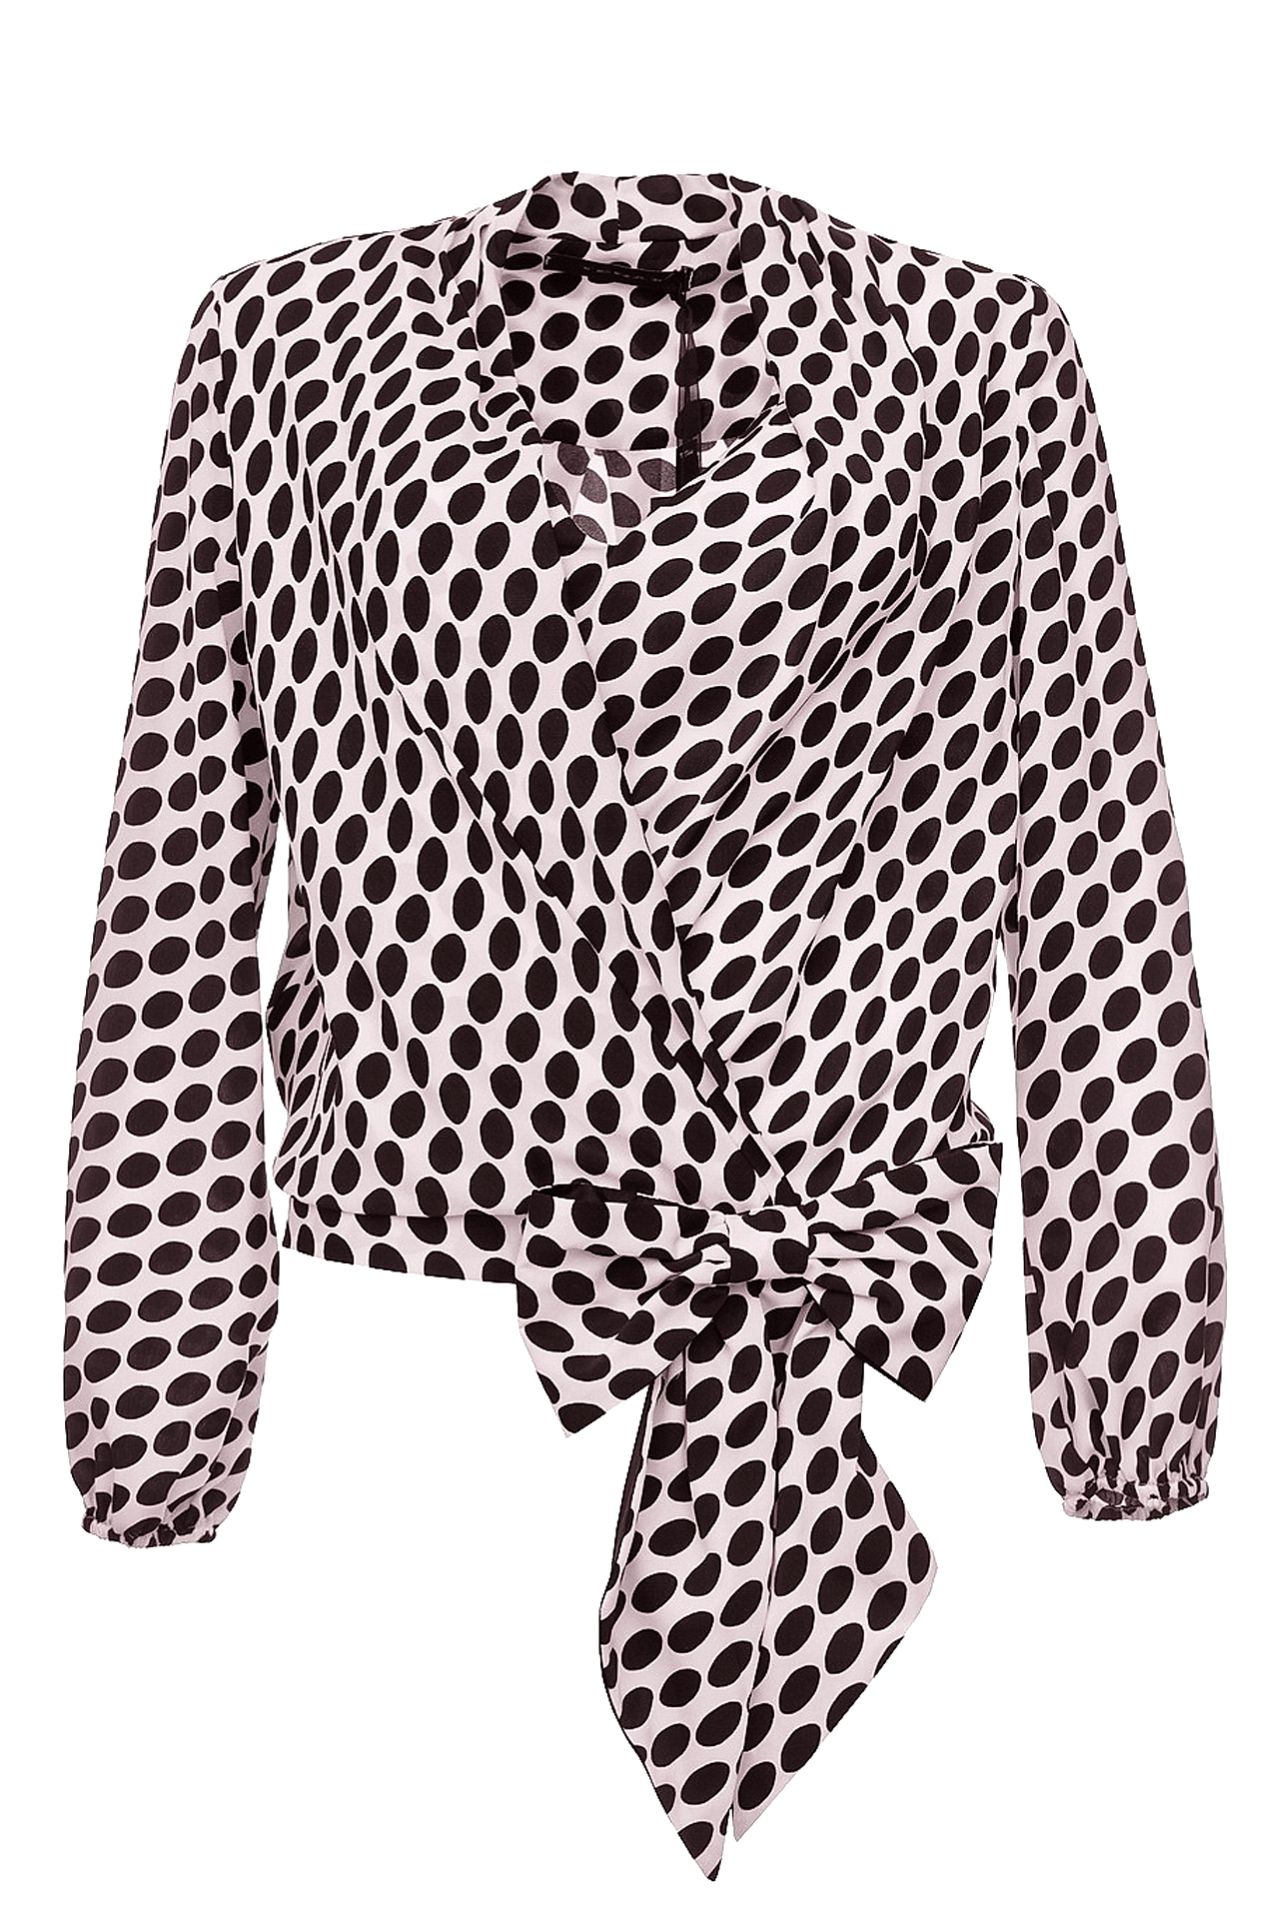 Одежда женская Блузка TENAX (6019/14.2). Купить за 5450 руб.